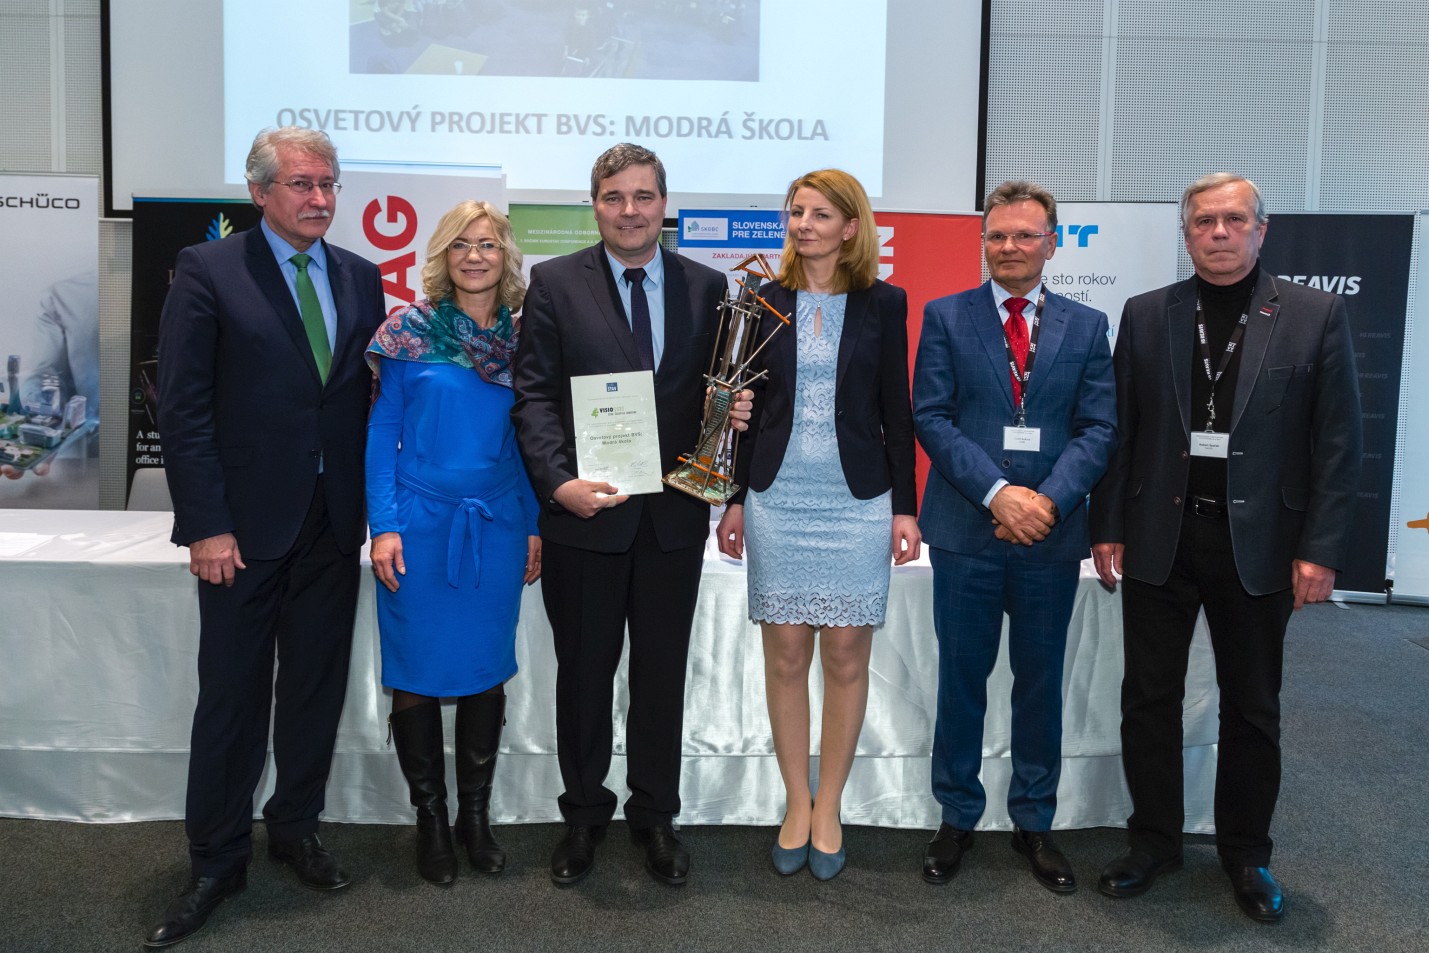  Laureátom ceny VISIO 2020 sa stal osvetový projekt BVS pre deti : zľava D. Petráš, D. Lalíková, Zs. Lukáč, J. Pančíková, P. Kukura a R. Špaček